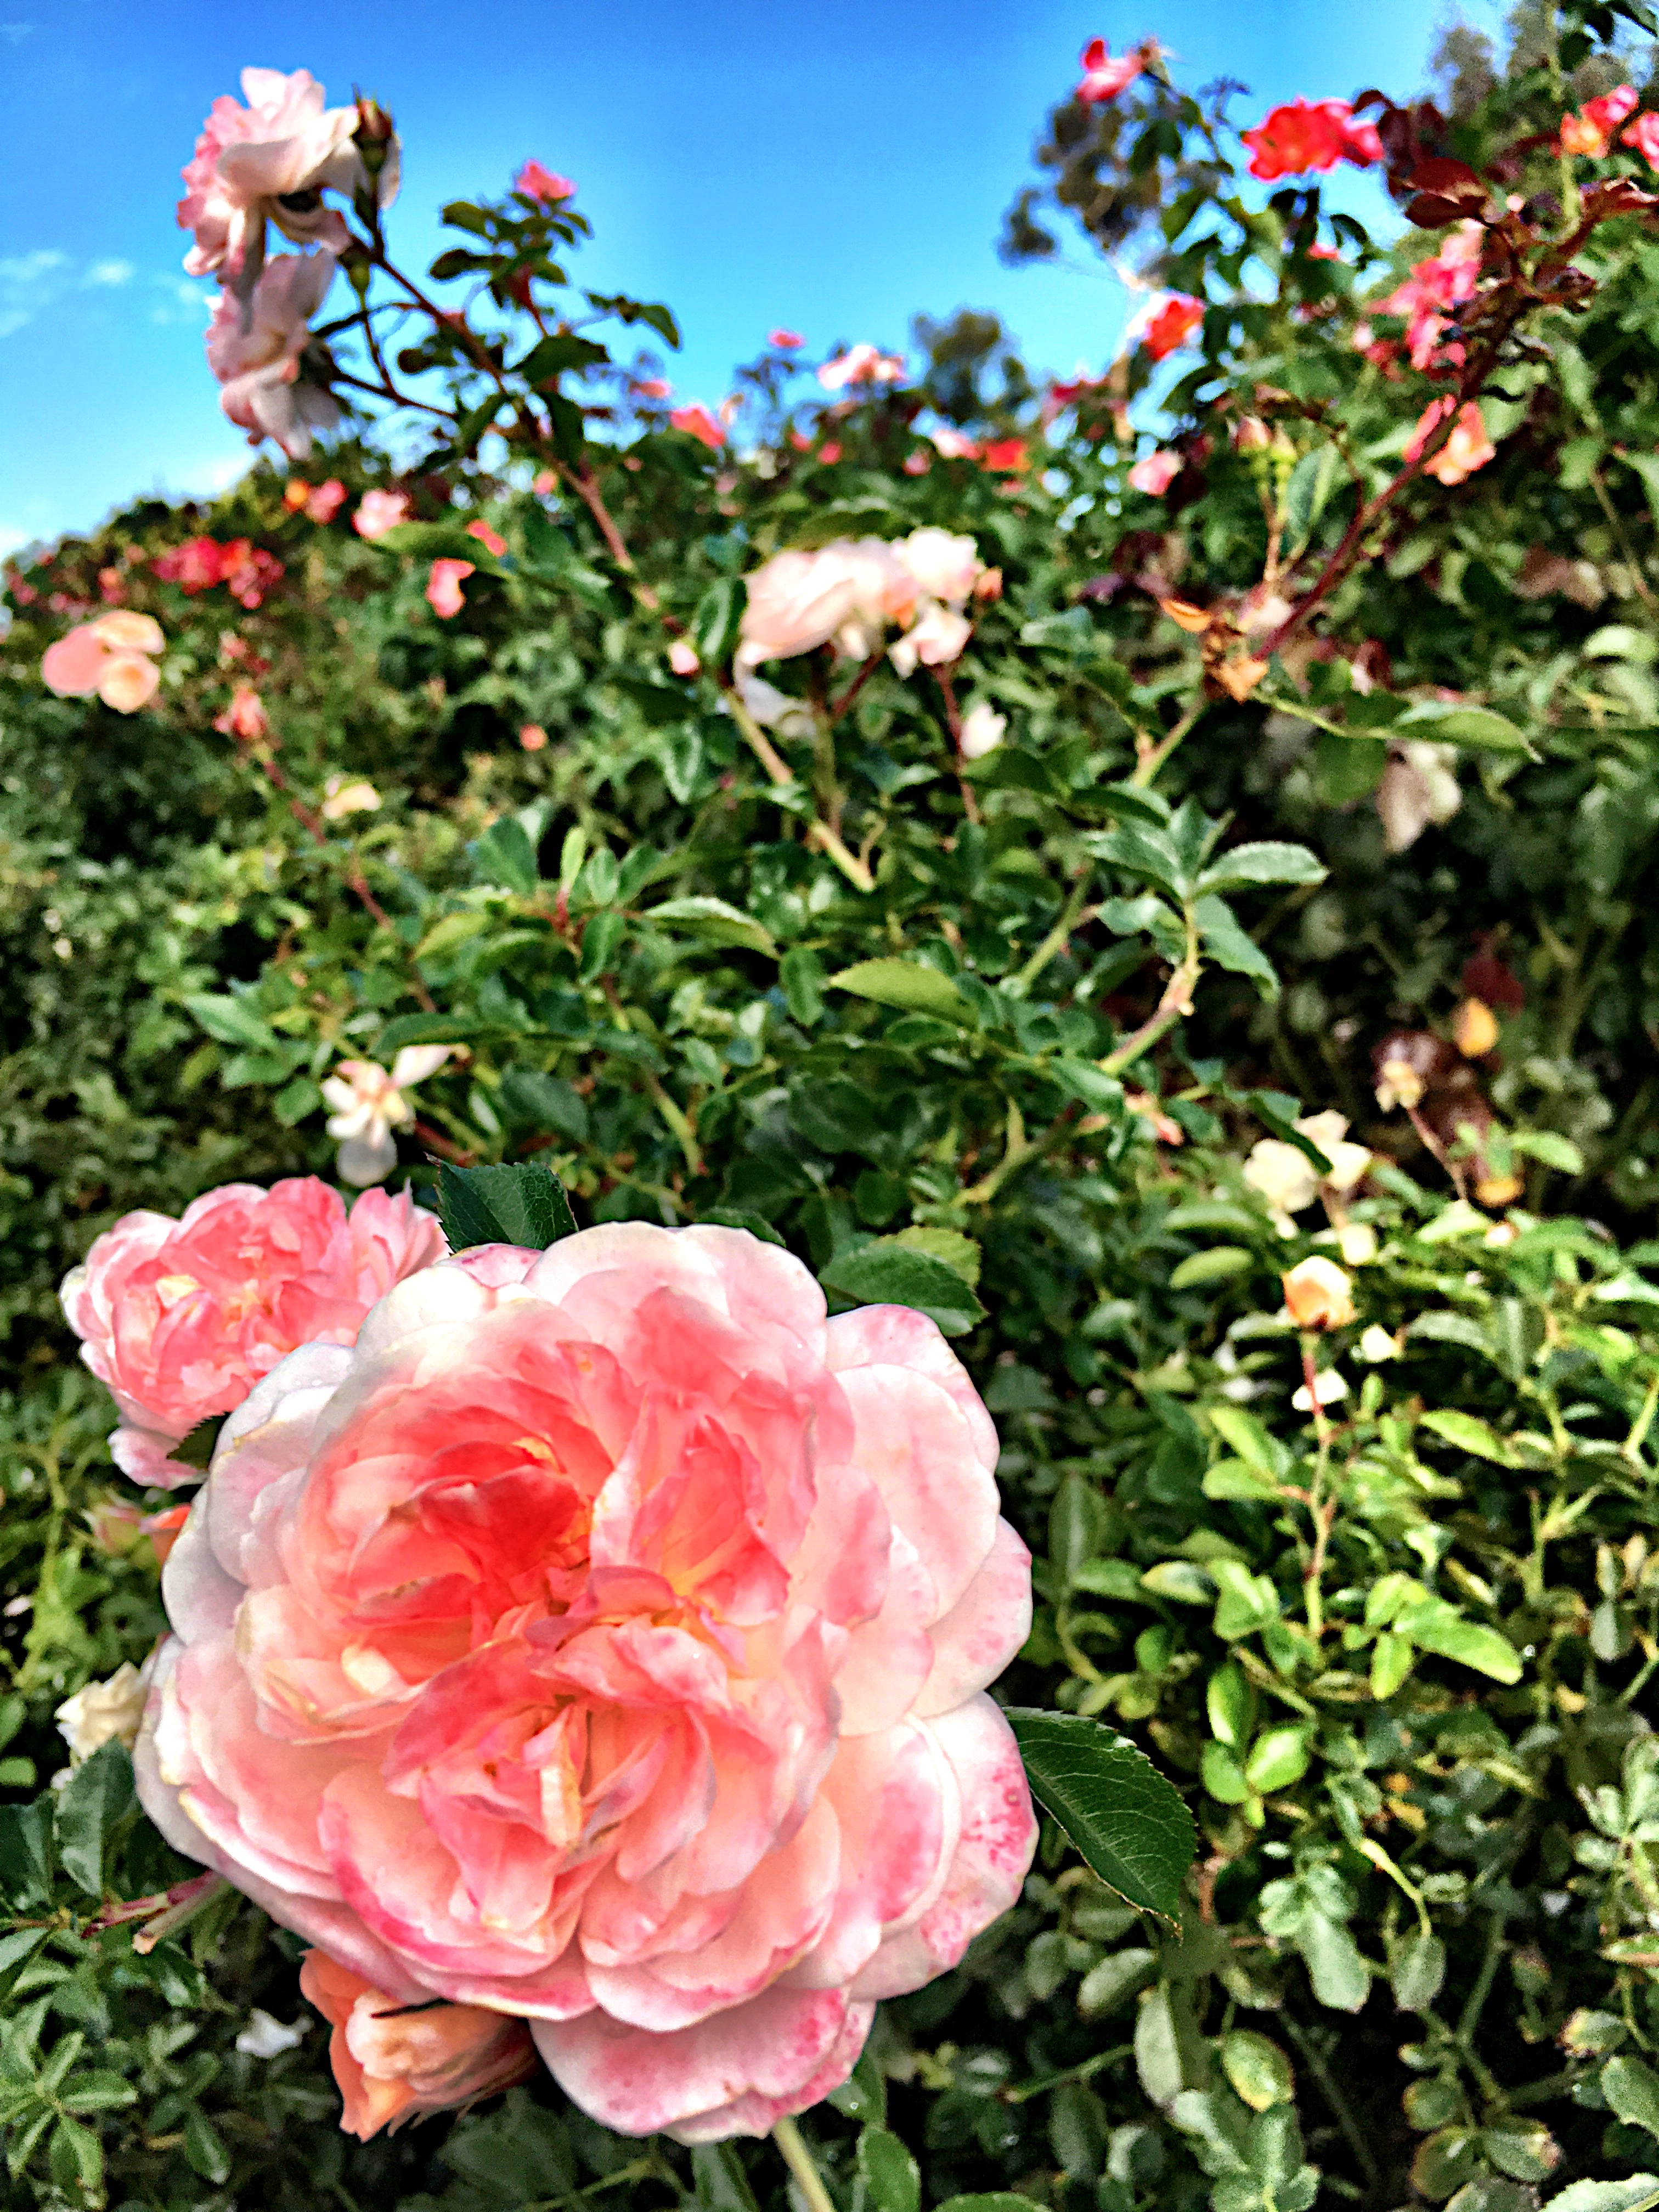 Rose Garden, Balboa Park, San Diego